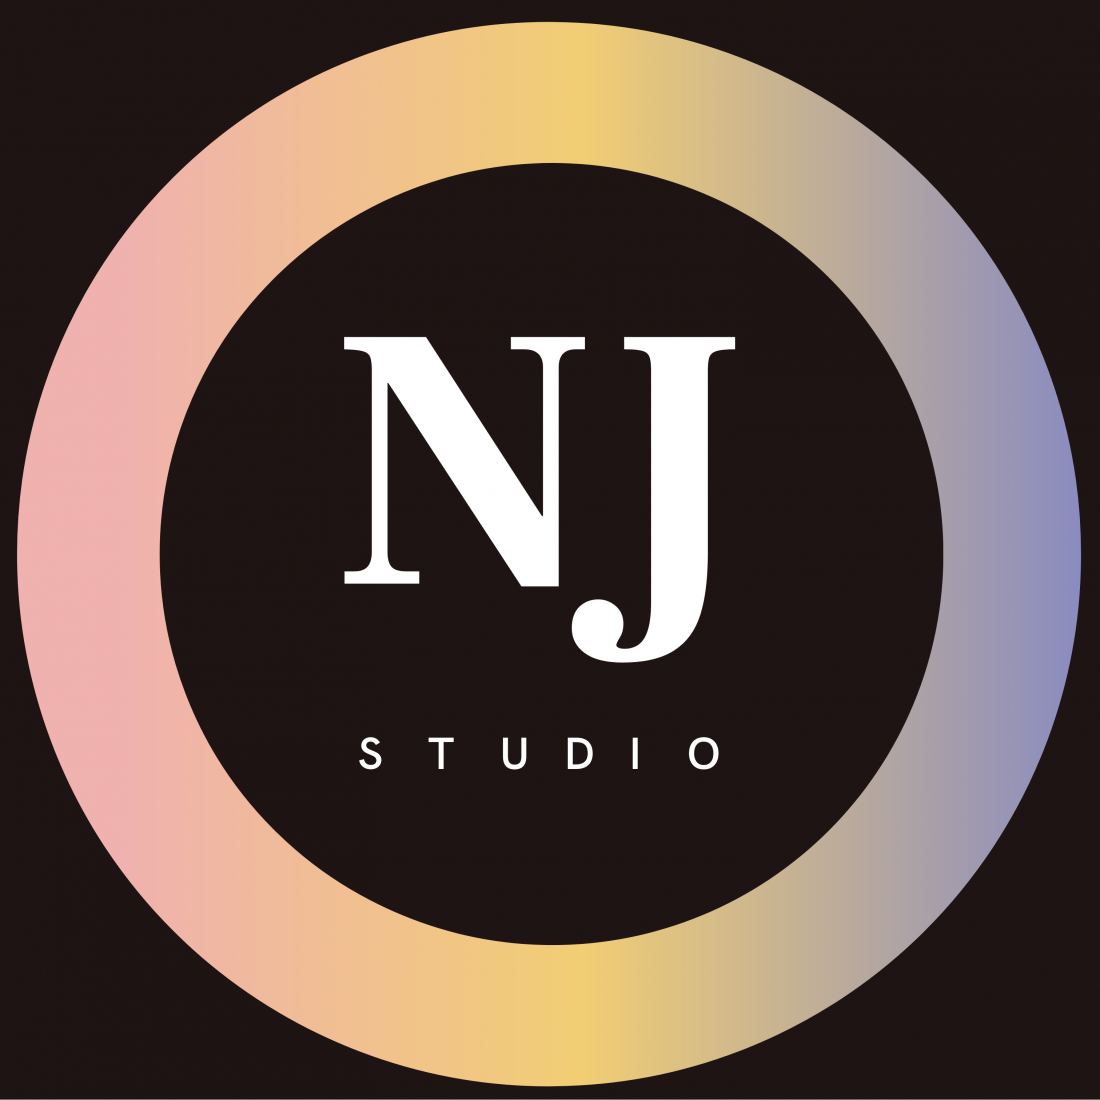 Женская/мужская стрижка, окрашивание, укладка волос от 20 руб. в студии красоты "Studio NJ"